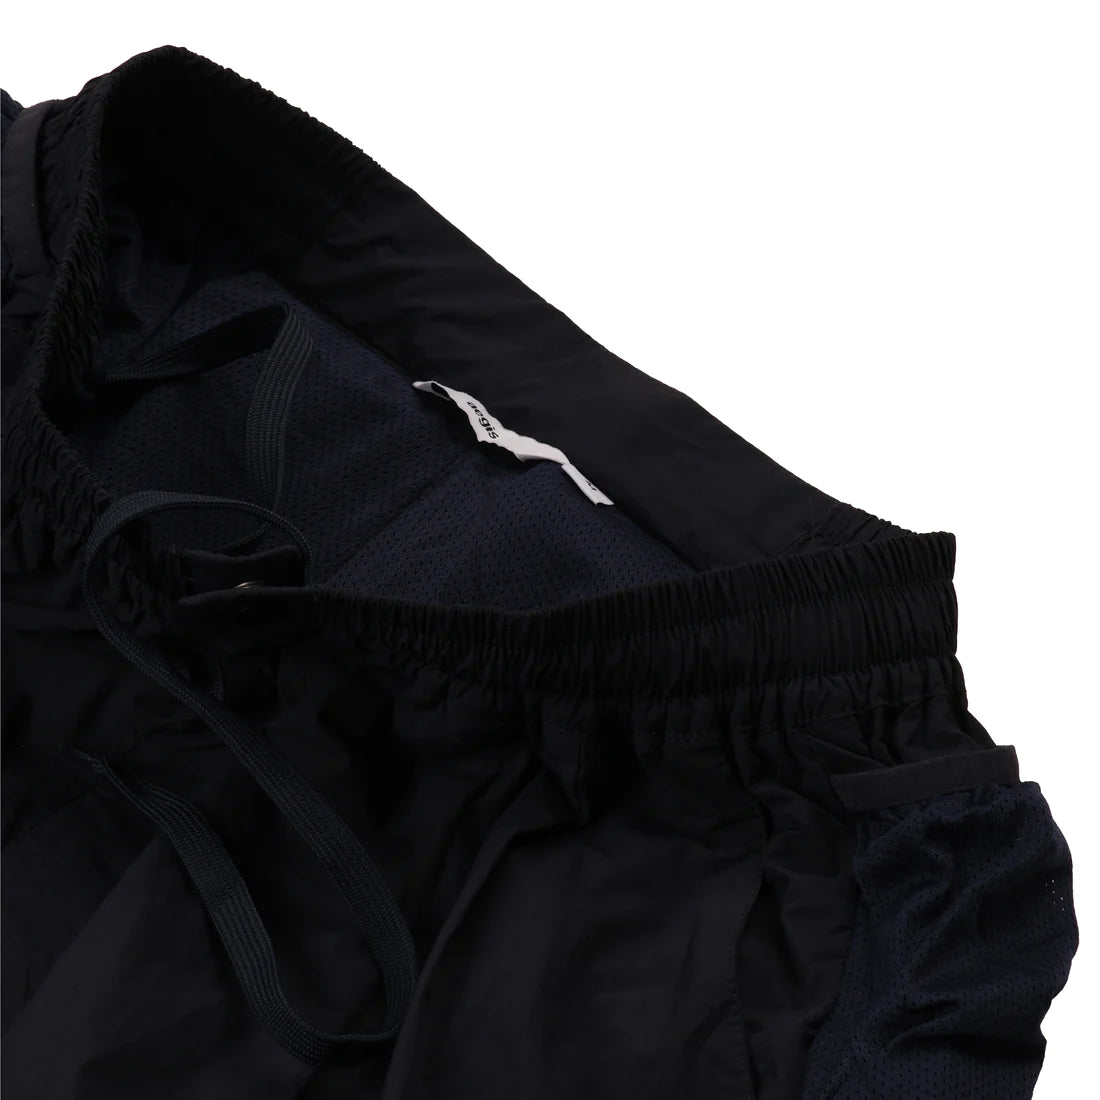 Aegis | Wide Nylon Shorts Navy